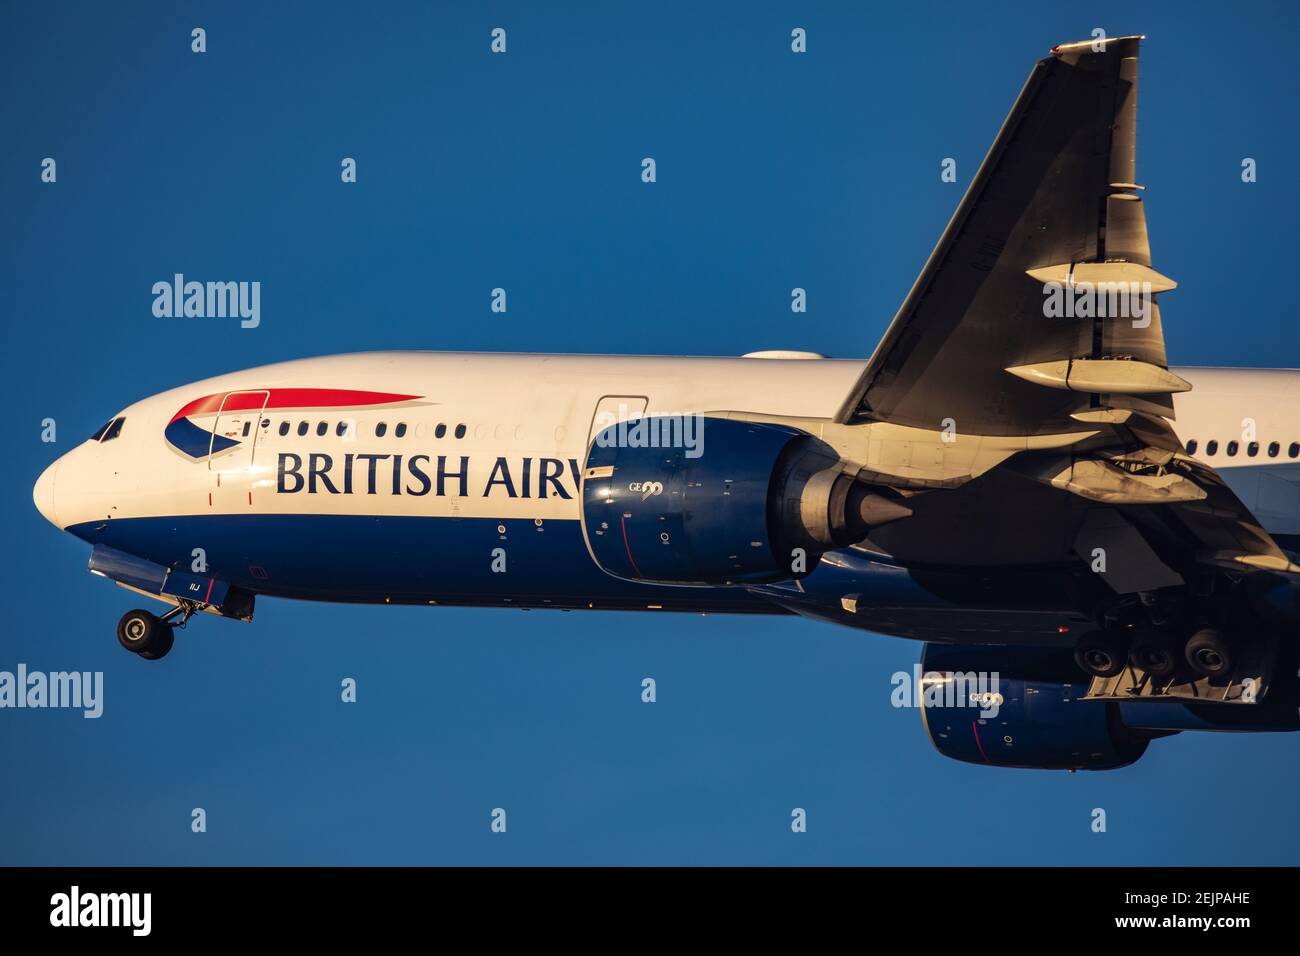 Gros plan de British Airways Boeing 777 enregistrement G-VIIJ décollage le 29 décembre 2019 de l'aéroport de Londres Heathrow, Middlesex, Royaume-Uni Banque D'Images